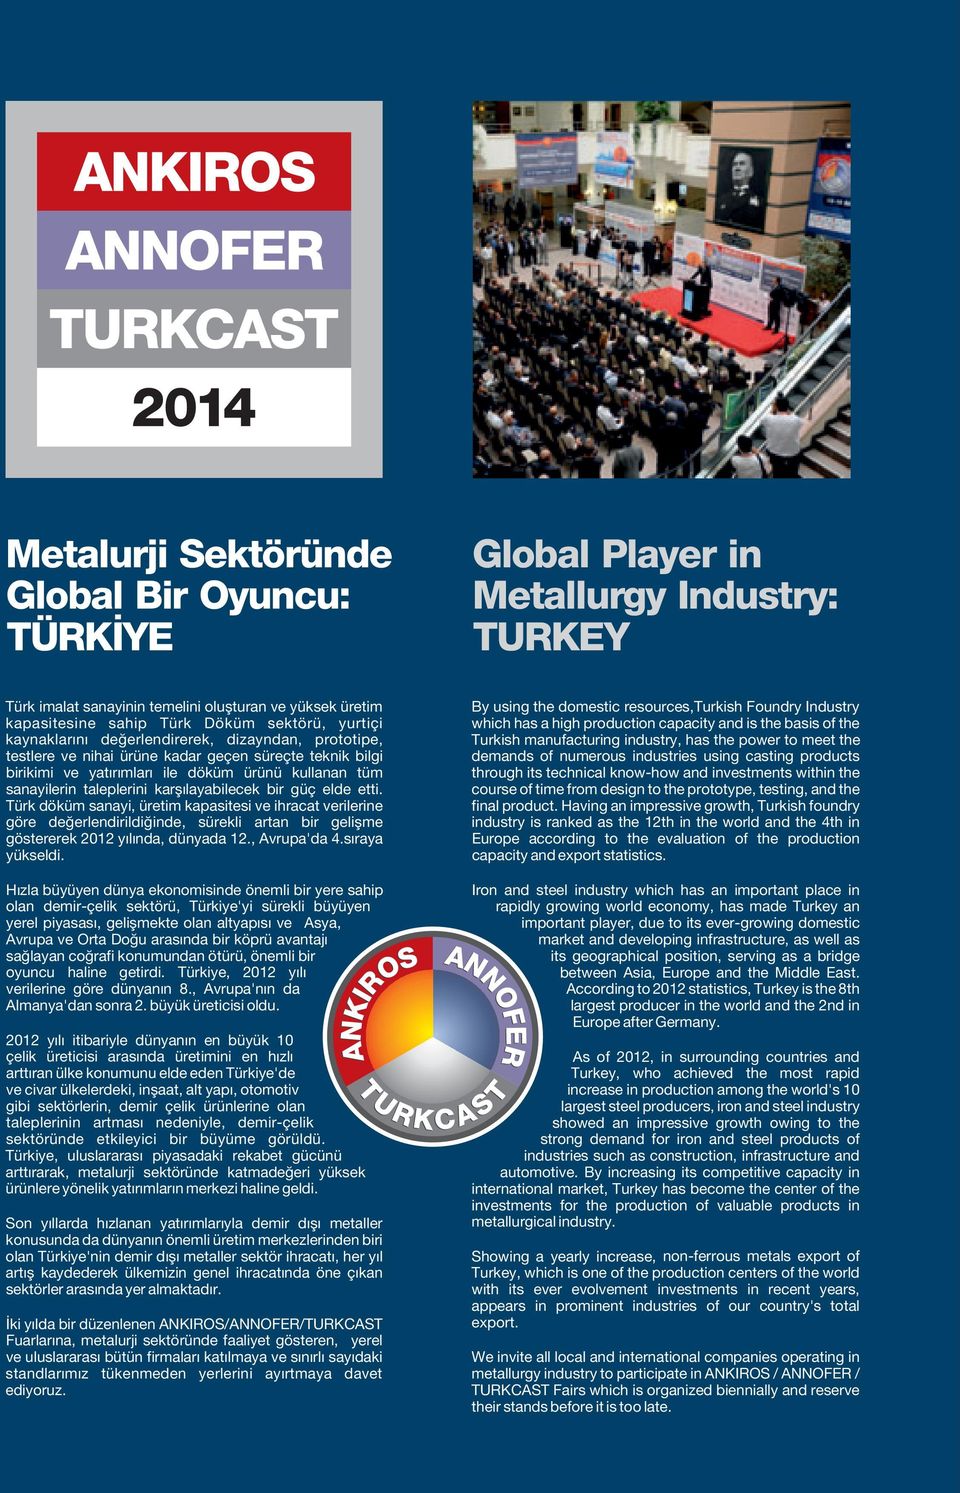 karşılayabilecek bir güç elde etti. Türk döküm sanayi, üretim kapasitesi ve ihracat verilerine göre değerlendirildiğinde, sürekli artan bir gelişme göstererek 2012 yılında, dünyada 12., Avrupa'da 4.